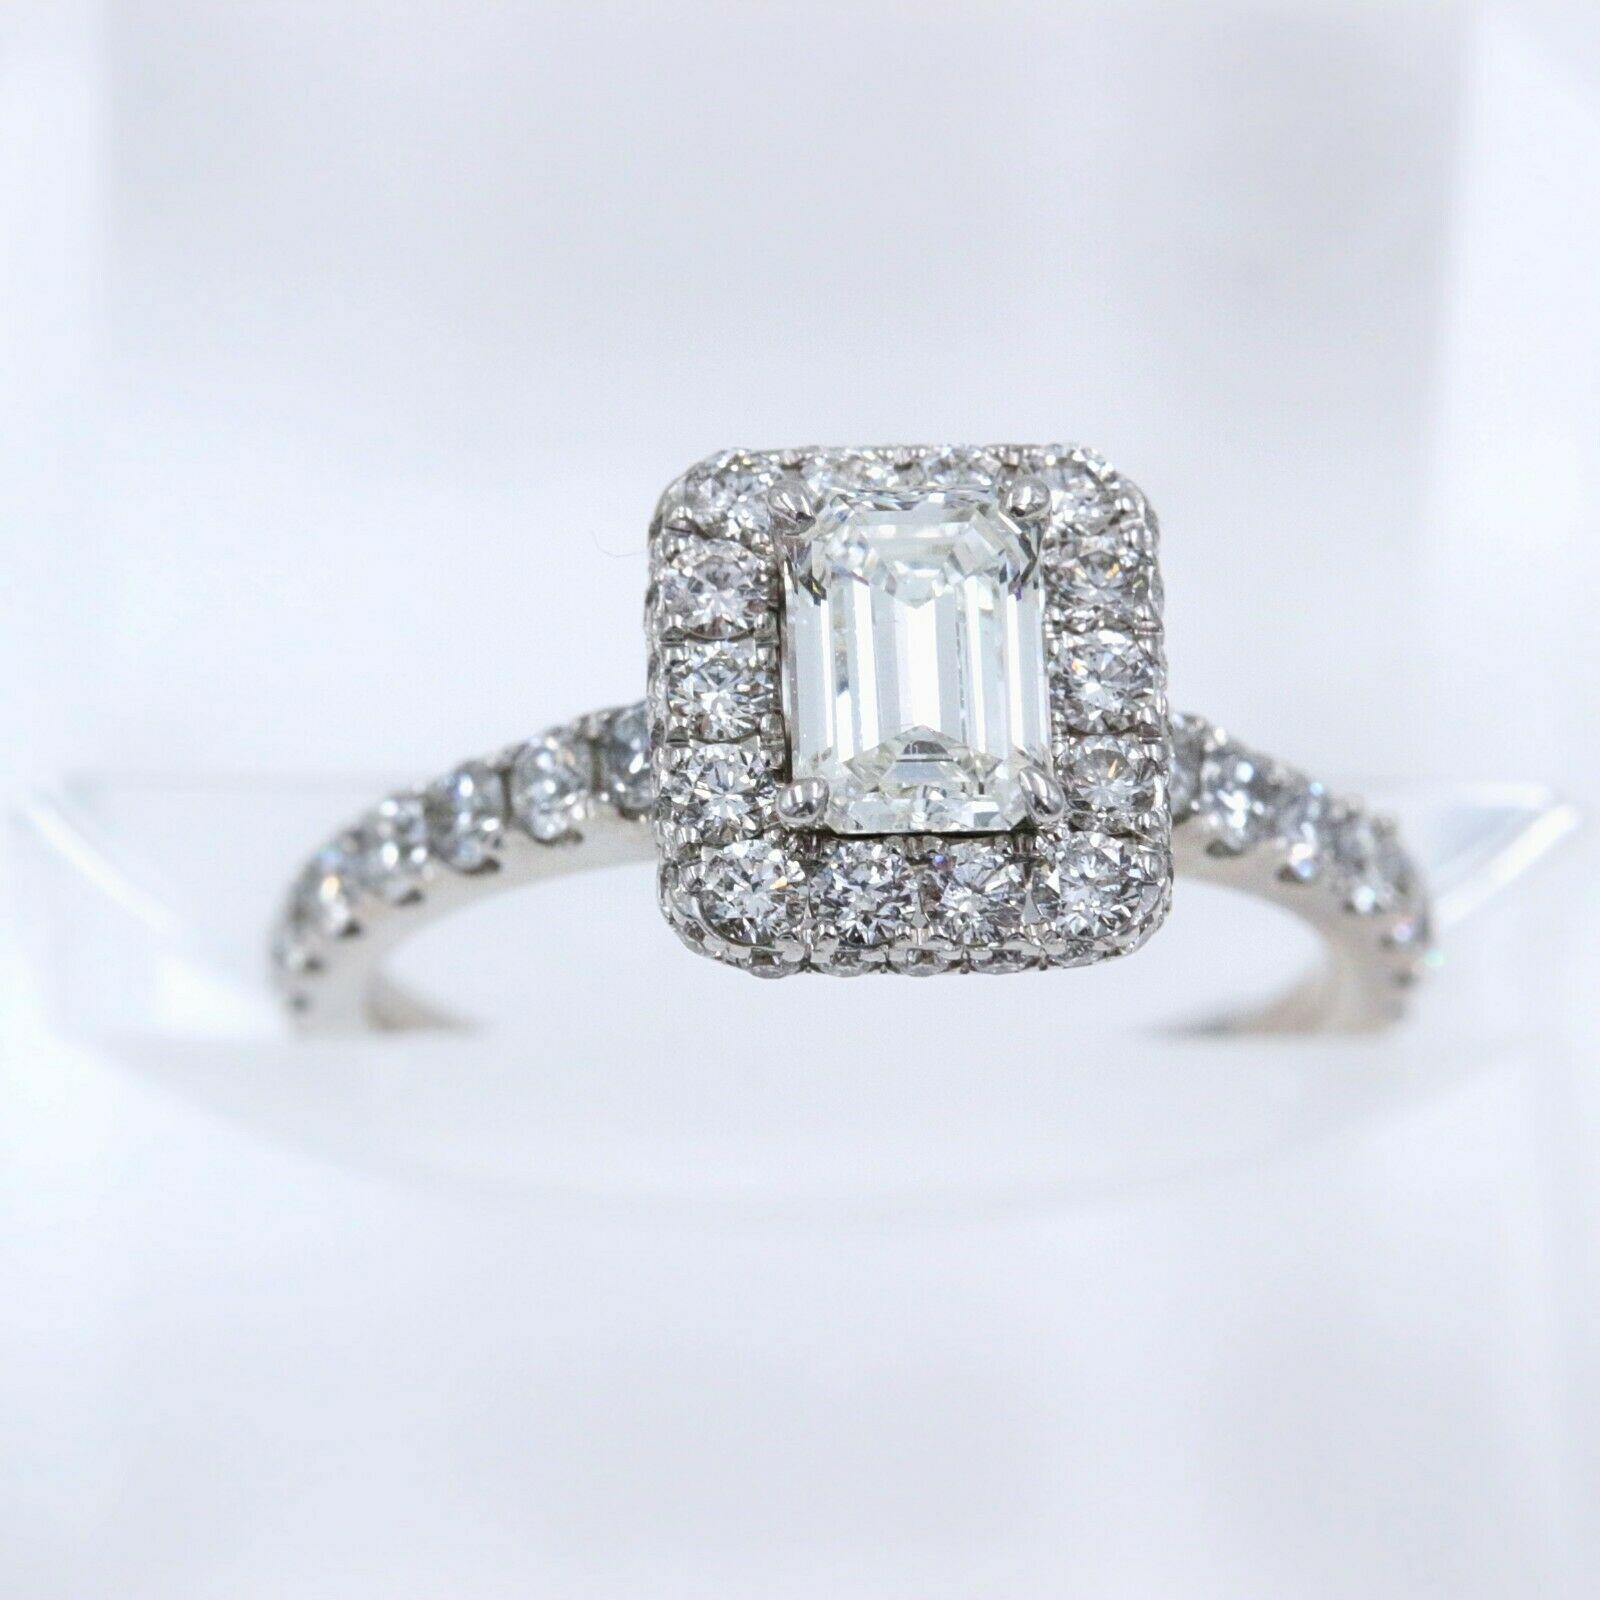 Women's Neil Lane Diamond Engagement Ring Emerald Cut 1 1/2 Carat SI1 14 Karat Gold